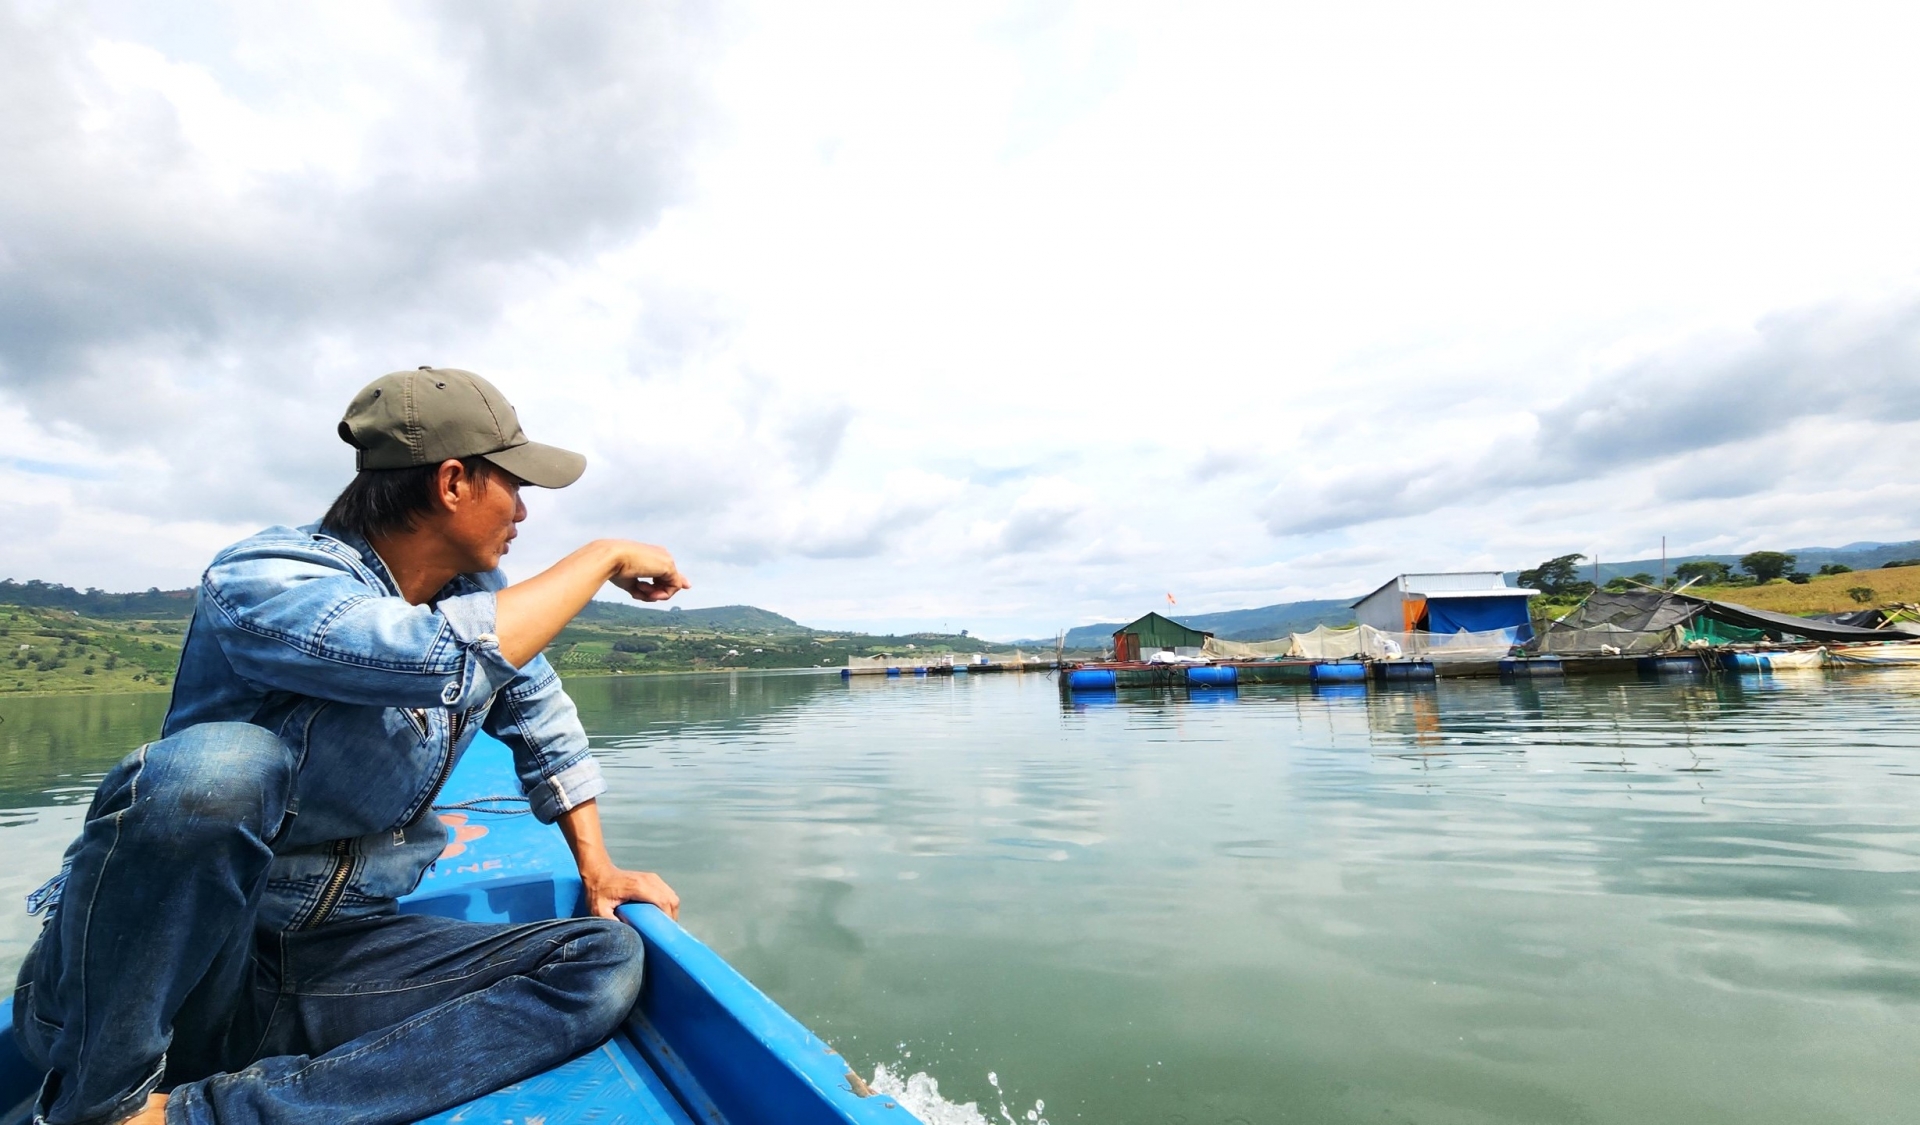 Làng chài hồ Đồng Nai 2 nơi xảy ra vụ việc Công ty Chinh Nguyên đưa người tới hù dọa cấm đánh bắt cá gây bức xúc cho người dân